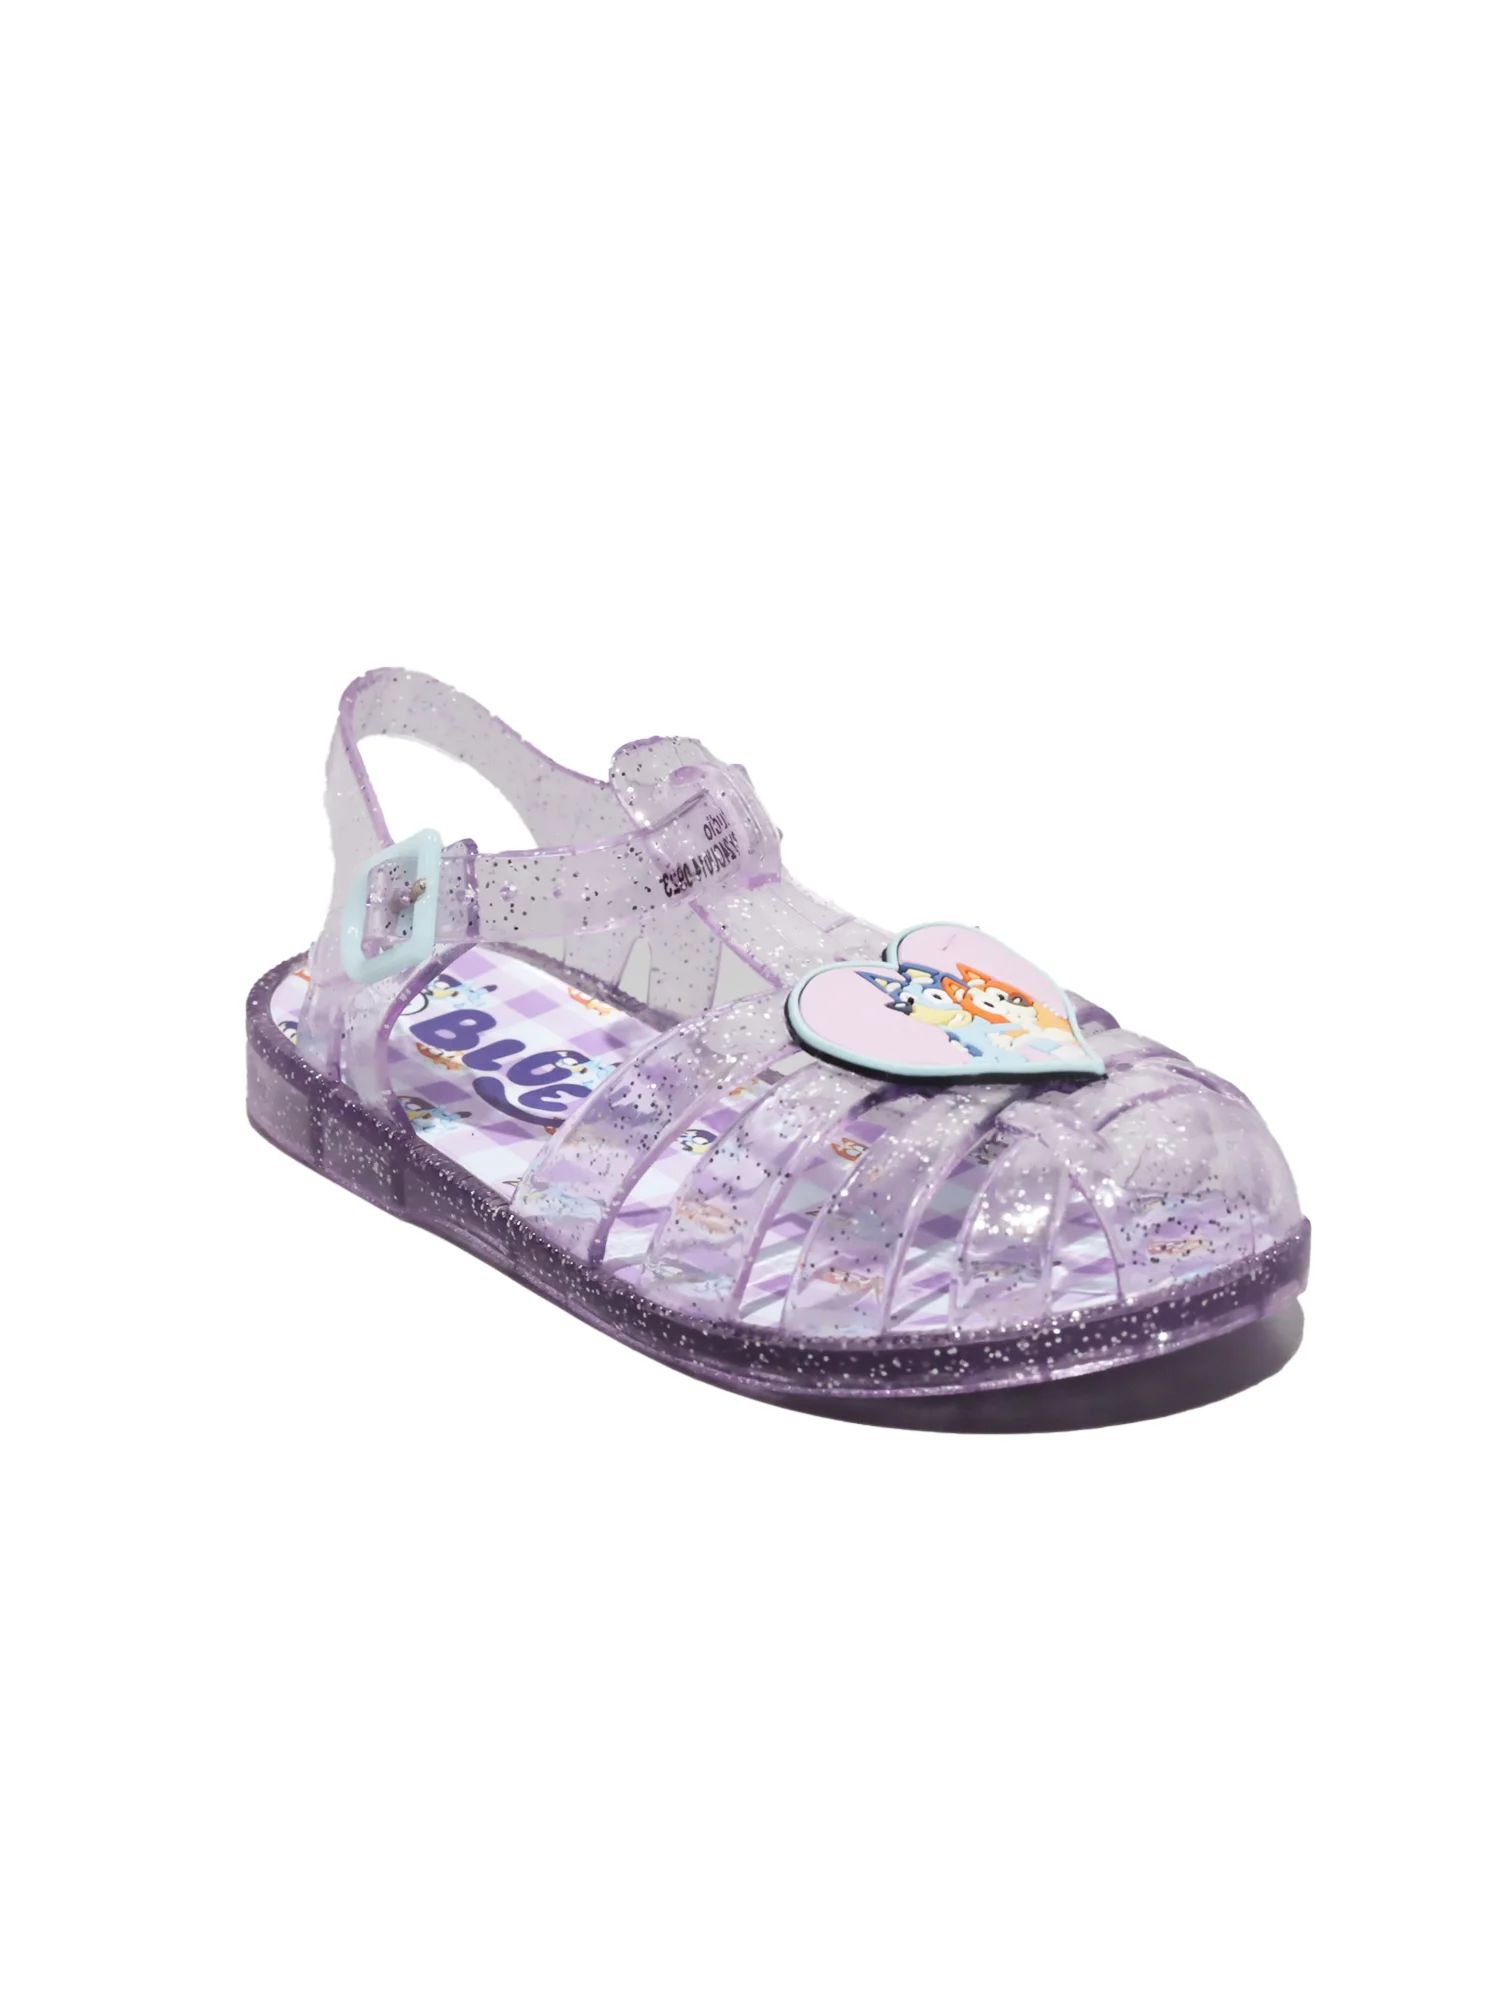 Bluey Toddler Girls Fisherman Sandals, Sizes 7-12 | Walmart (US)